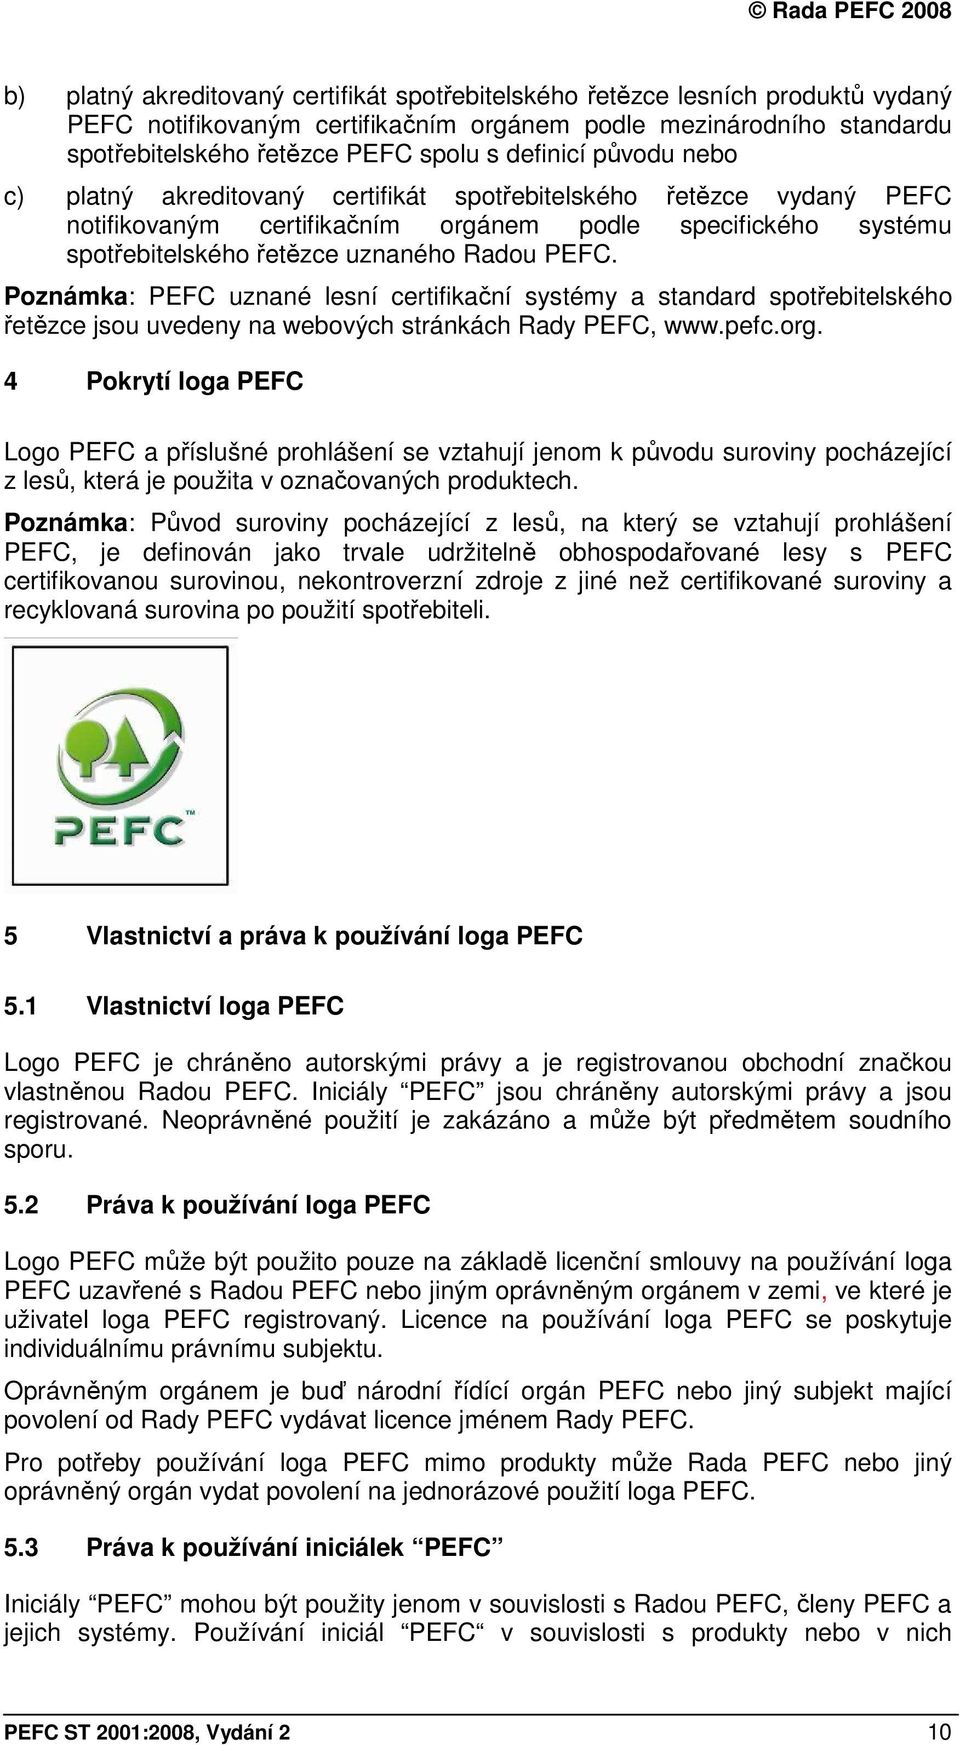 Poznámka: PEFC uznané lesní certifikační systémy a standard spotřebitelského řetězce jsou uvedeny na webových stránkách Rady PEFC, www.pefc.org.